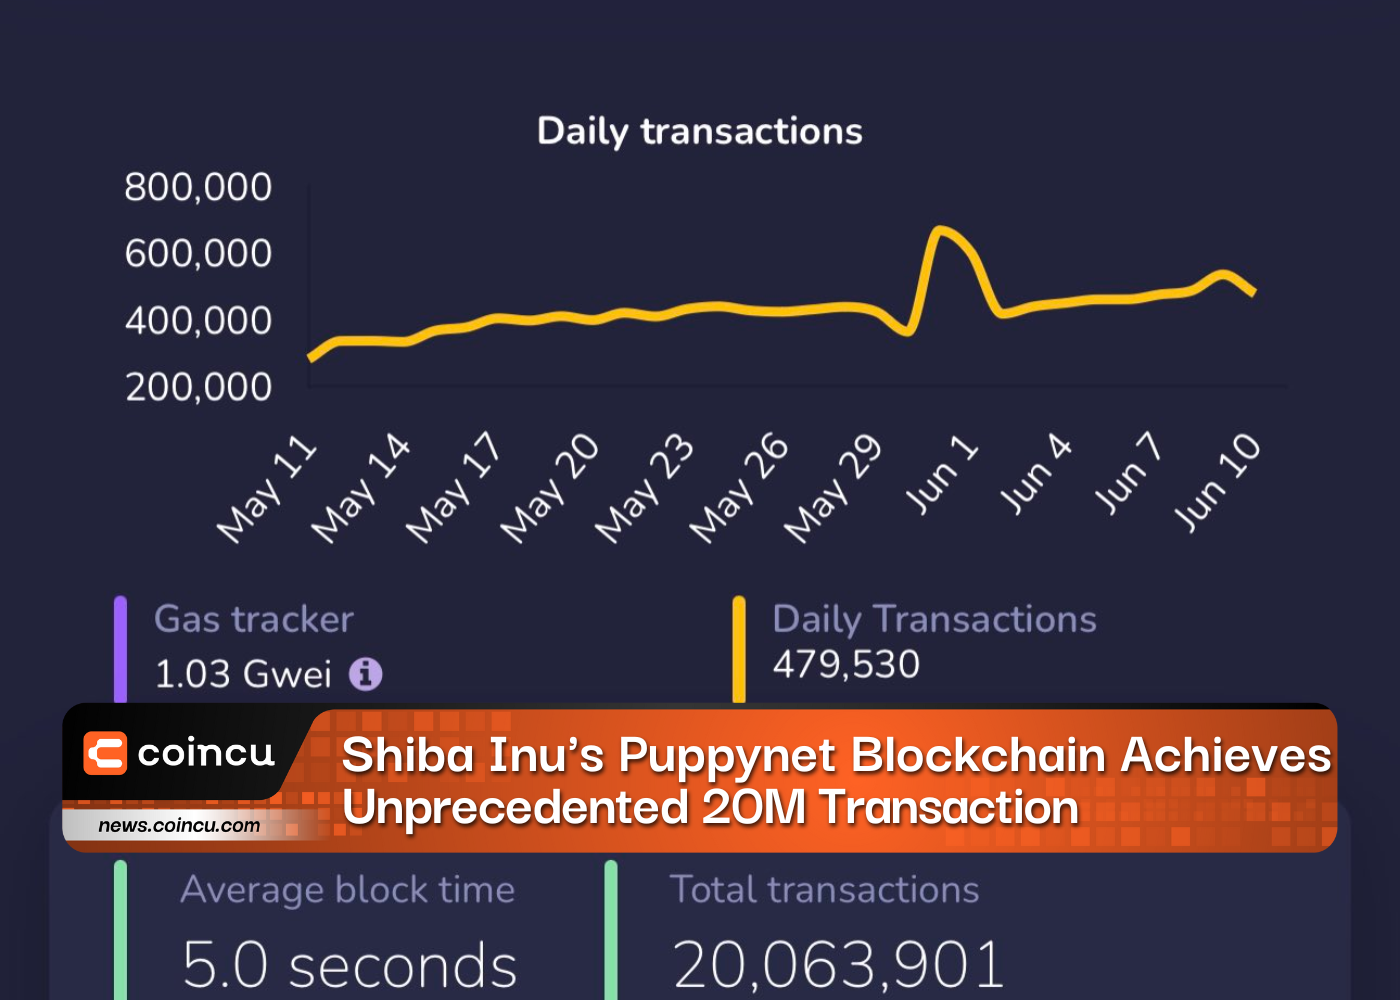 Shiba Inus Puppynet Blockchain Achieves